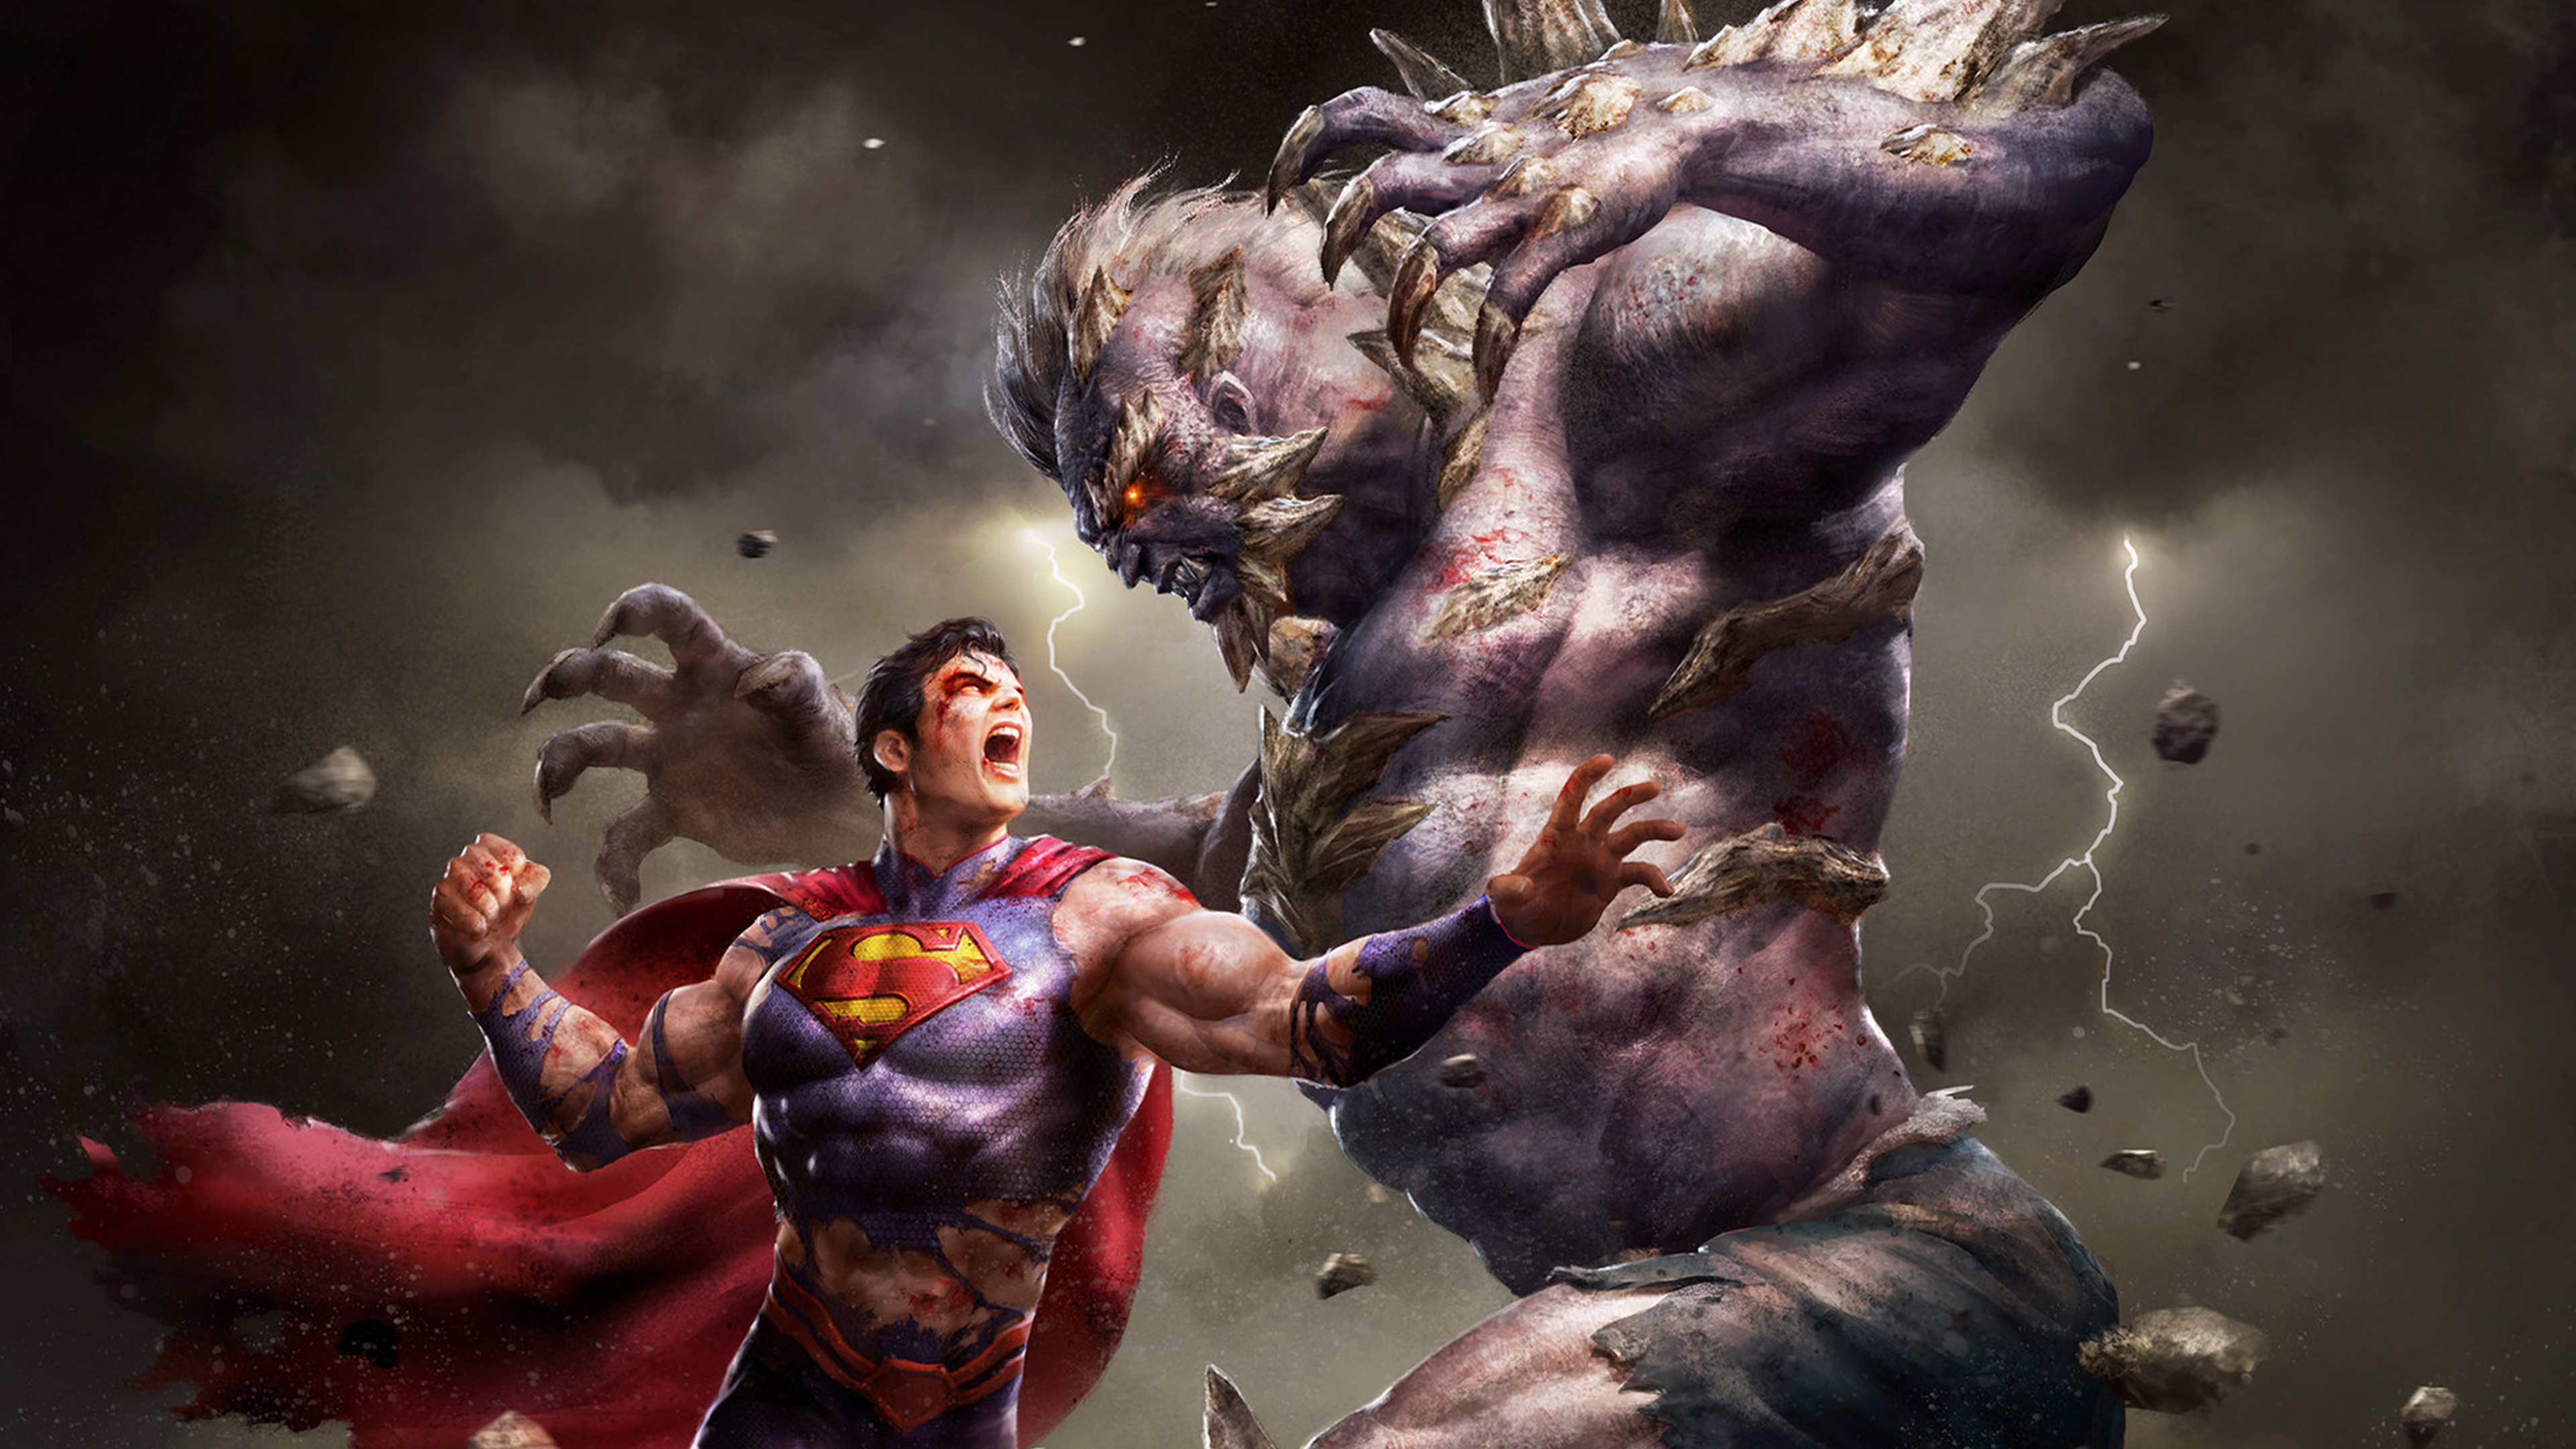 Читать сильный герой. Супермен против Думсдея. Супермен vs Doomsday. Супермен против Думсдея арт. Думсдей DC Comics.